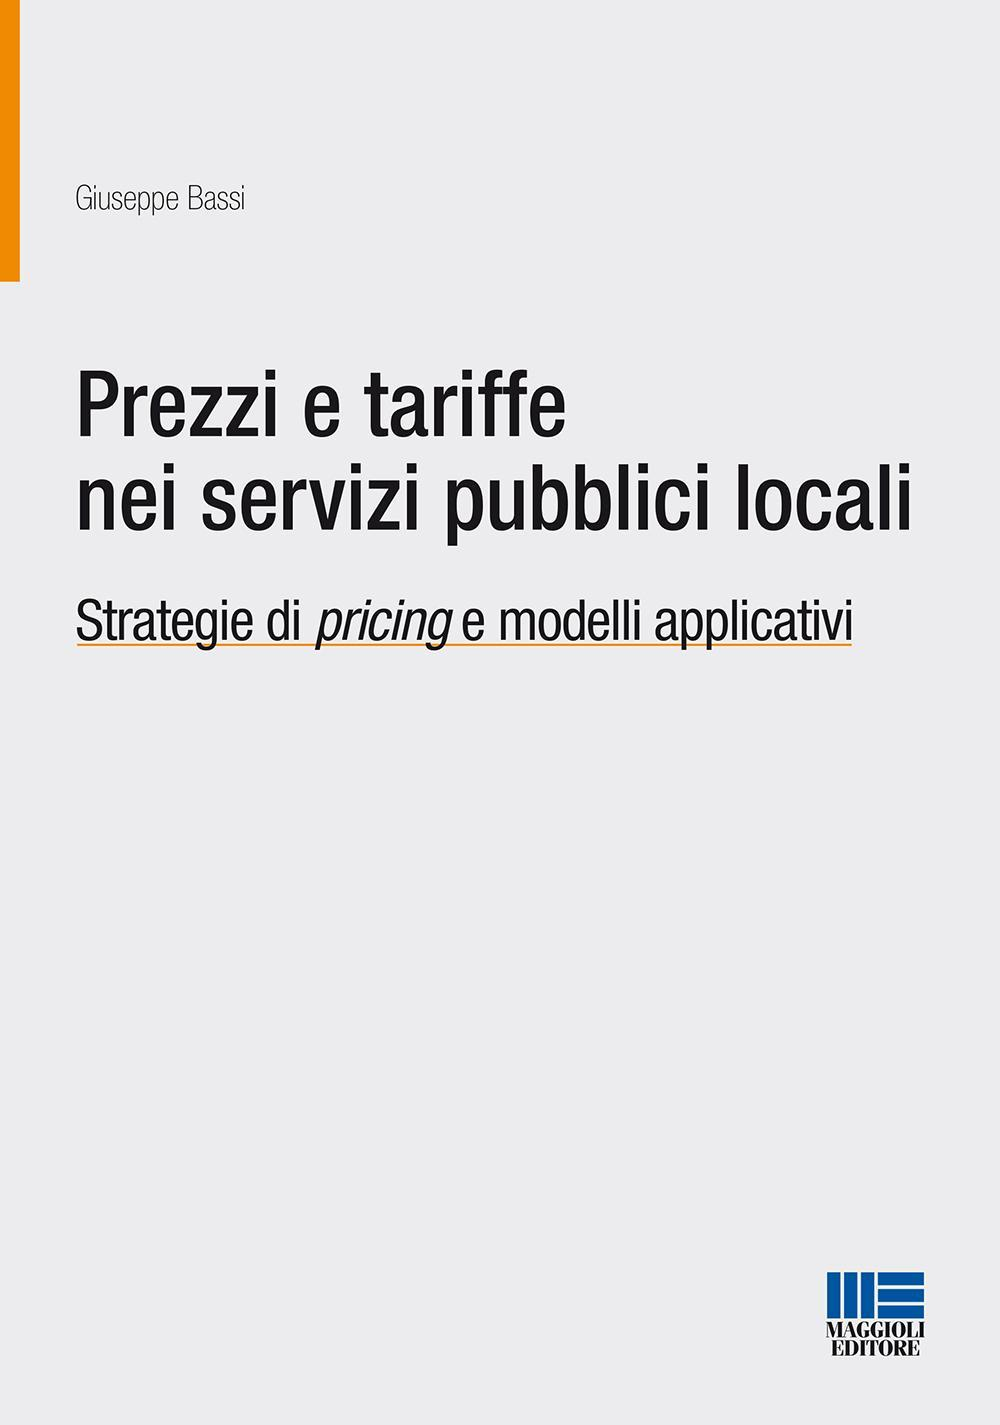 Image of Prezzi e tariffe nei servizi pubblici locali